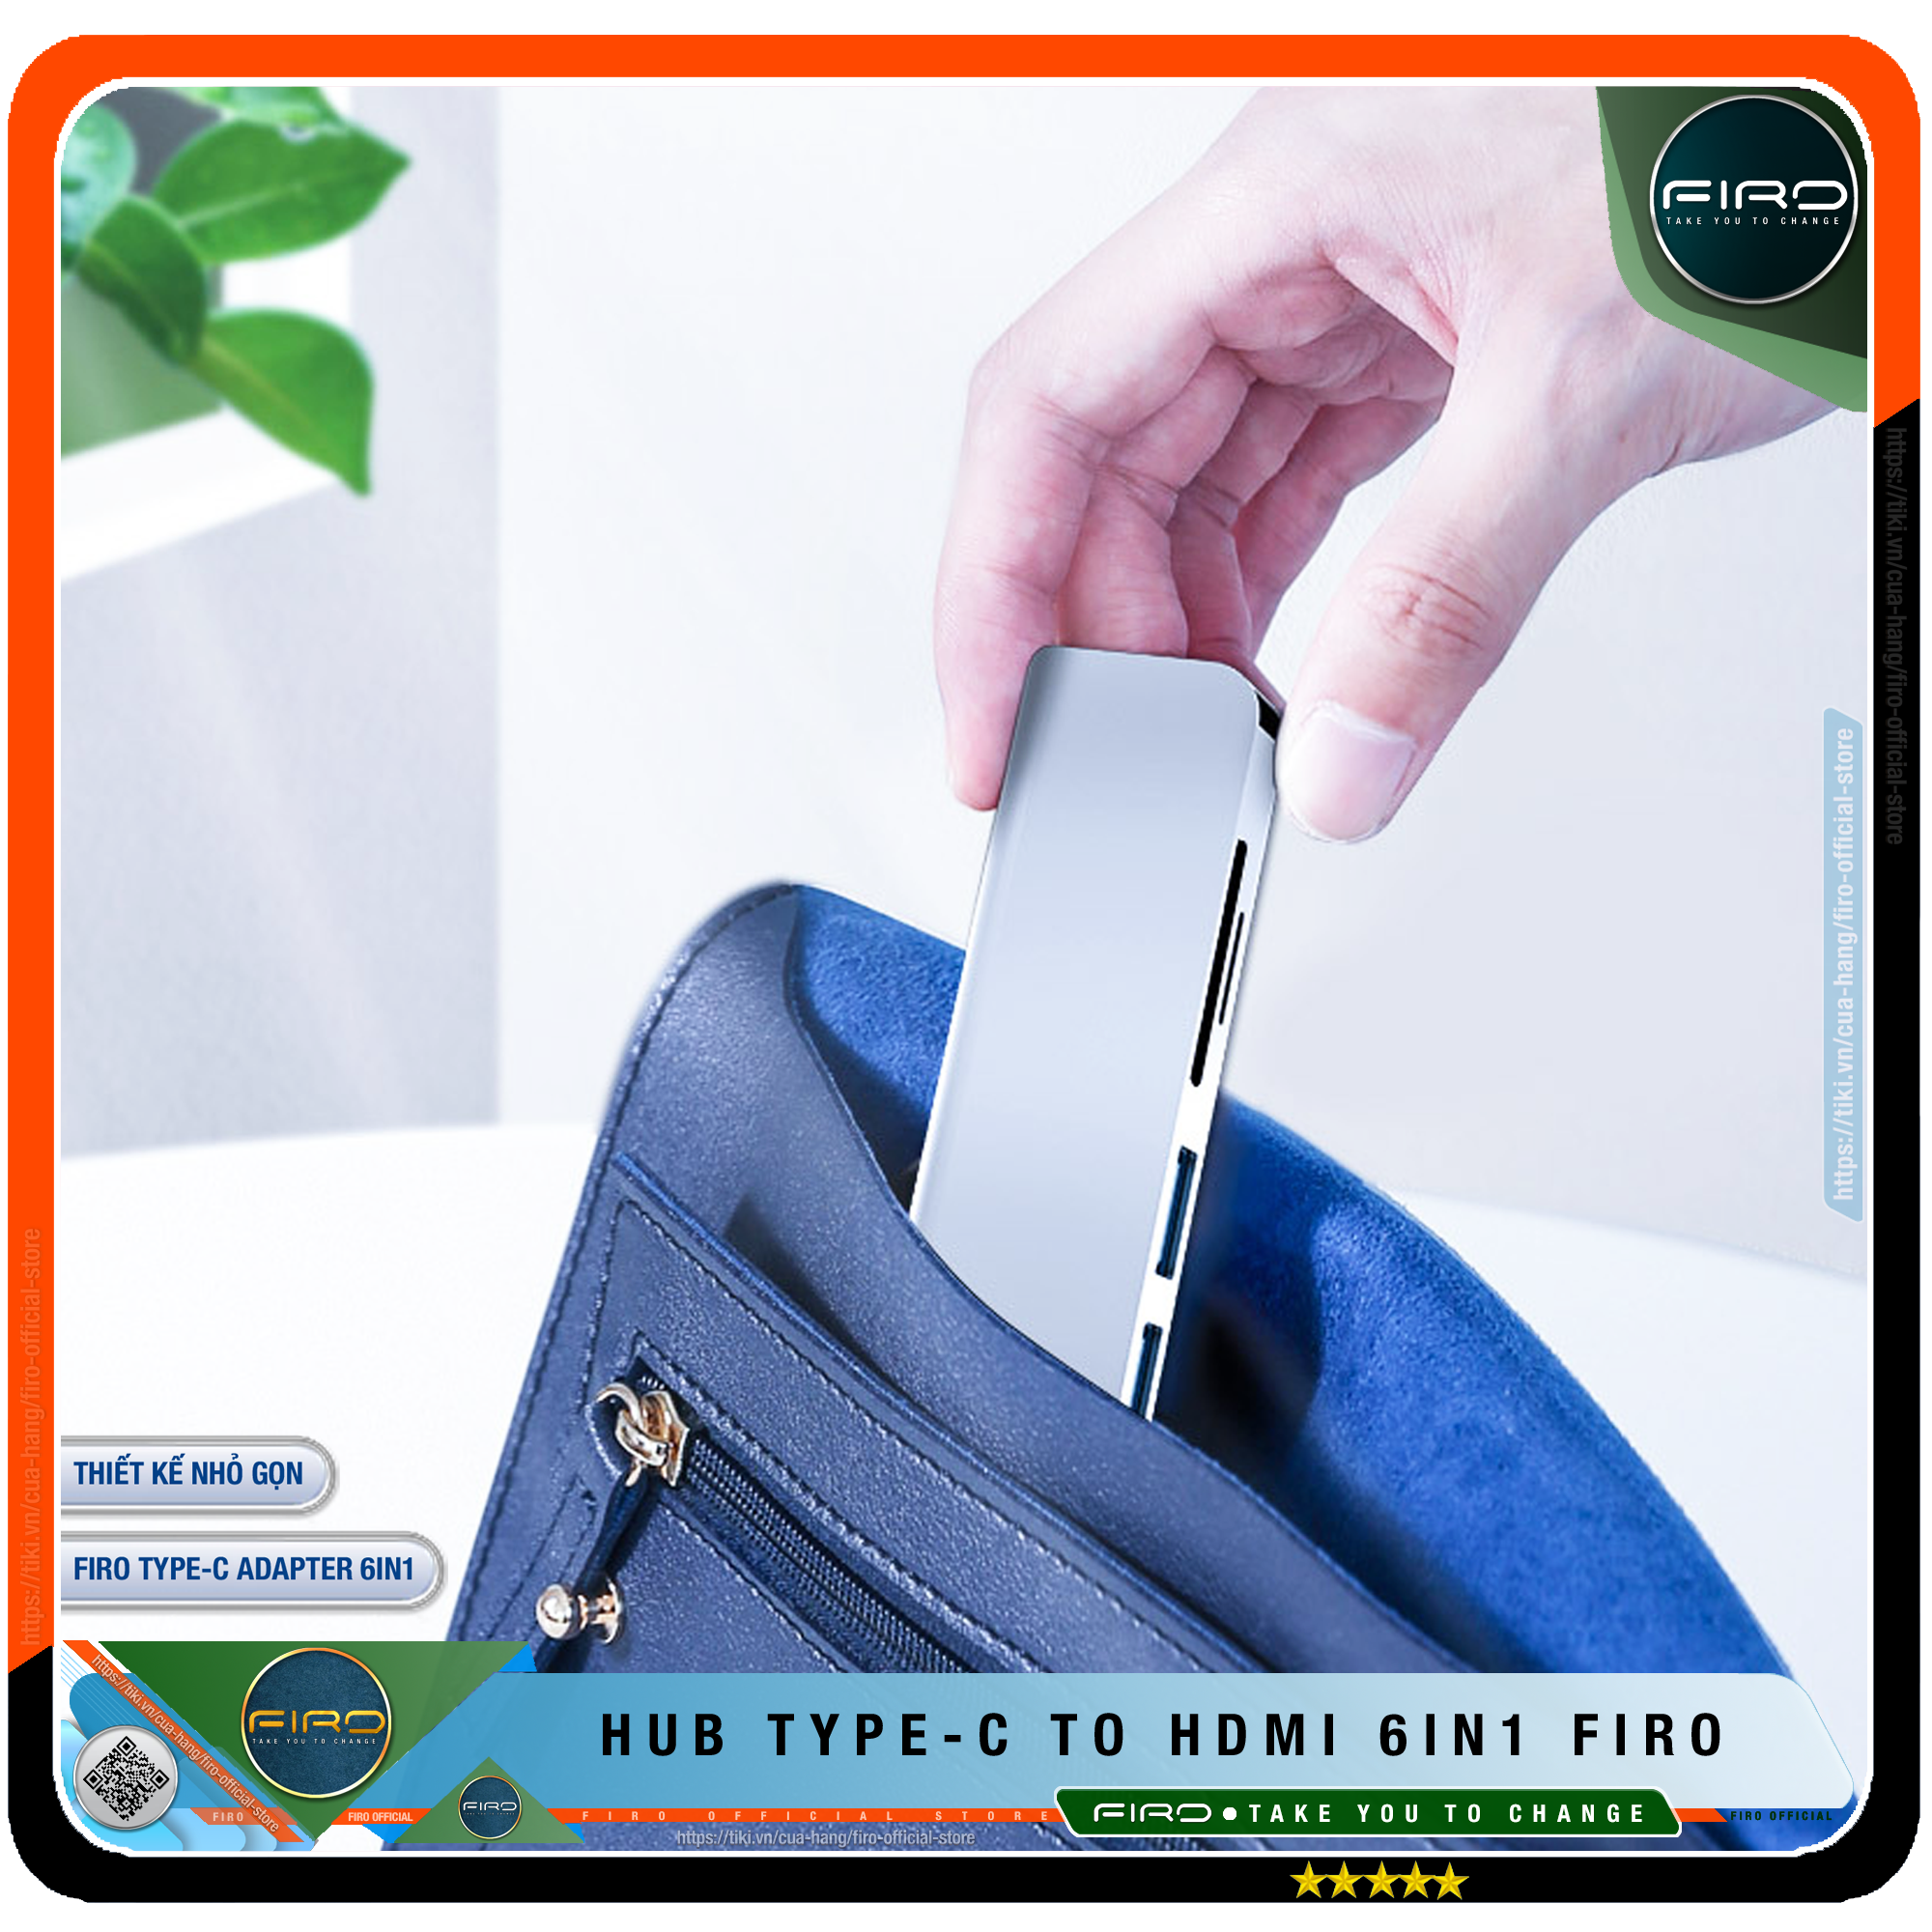 Hub Type C FIRO 6in1 - Hub Chuyển Đổi Type C To HDMI - 1 Cổng HDMI 4K, 2 Cổng USB 3.0, 2 Khe Đọc Thẻ TF Và SD, 1 Cổng Sạc Nhanh Type C PD - Kết Nối Nhiều Thiết Bị Với Tốc Độ Cao - Dùng Cho Tivi/Laptop/Playstation/PC/Smartphone – Hàng chính hãng